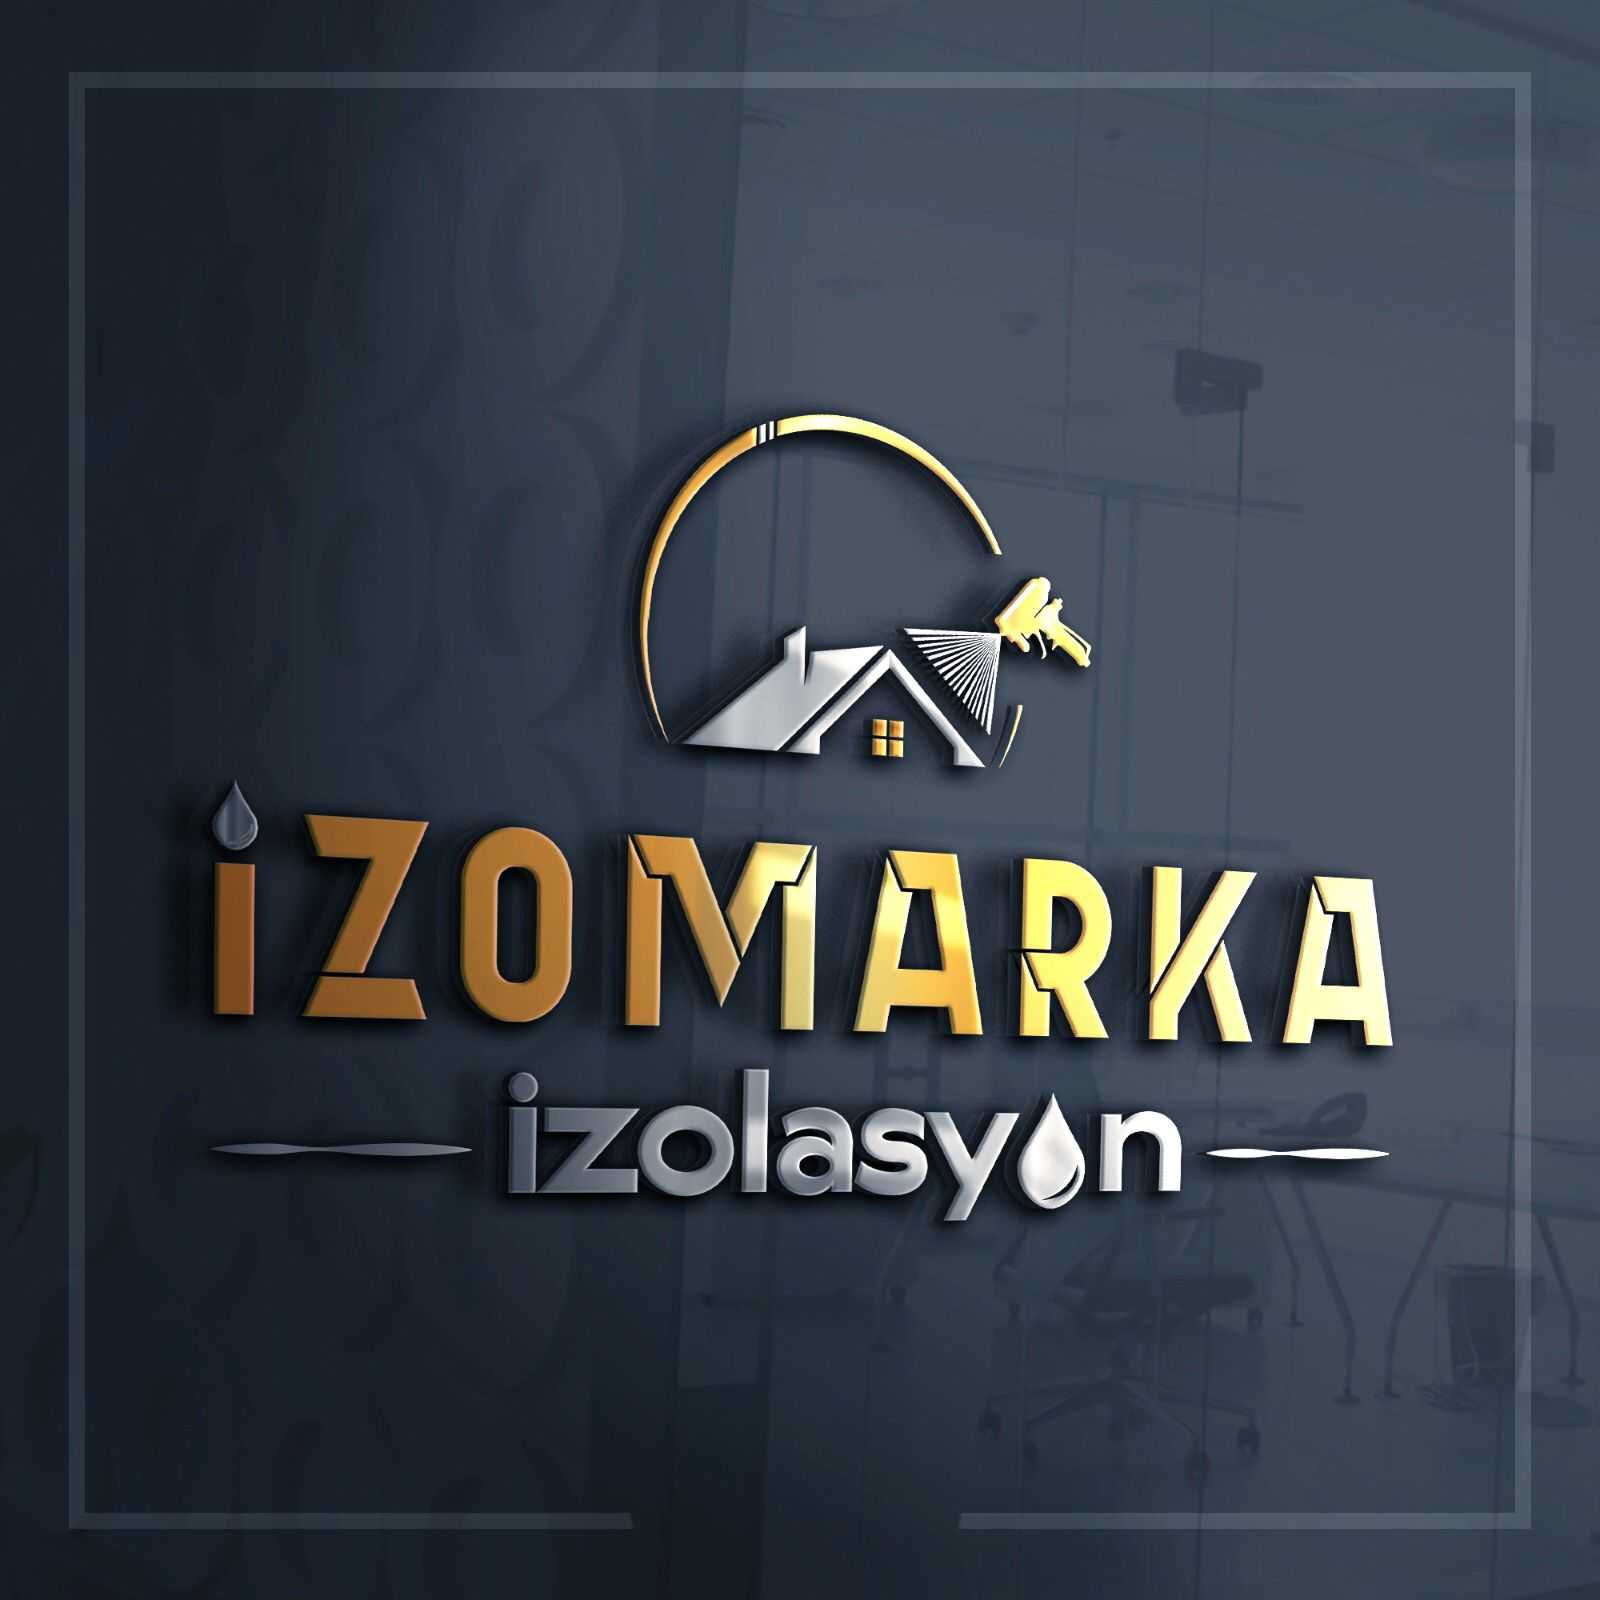 marka izolasyon Logo